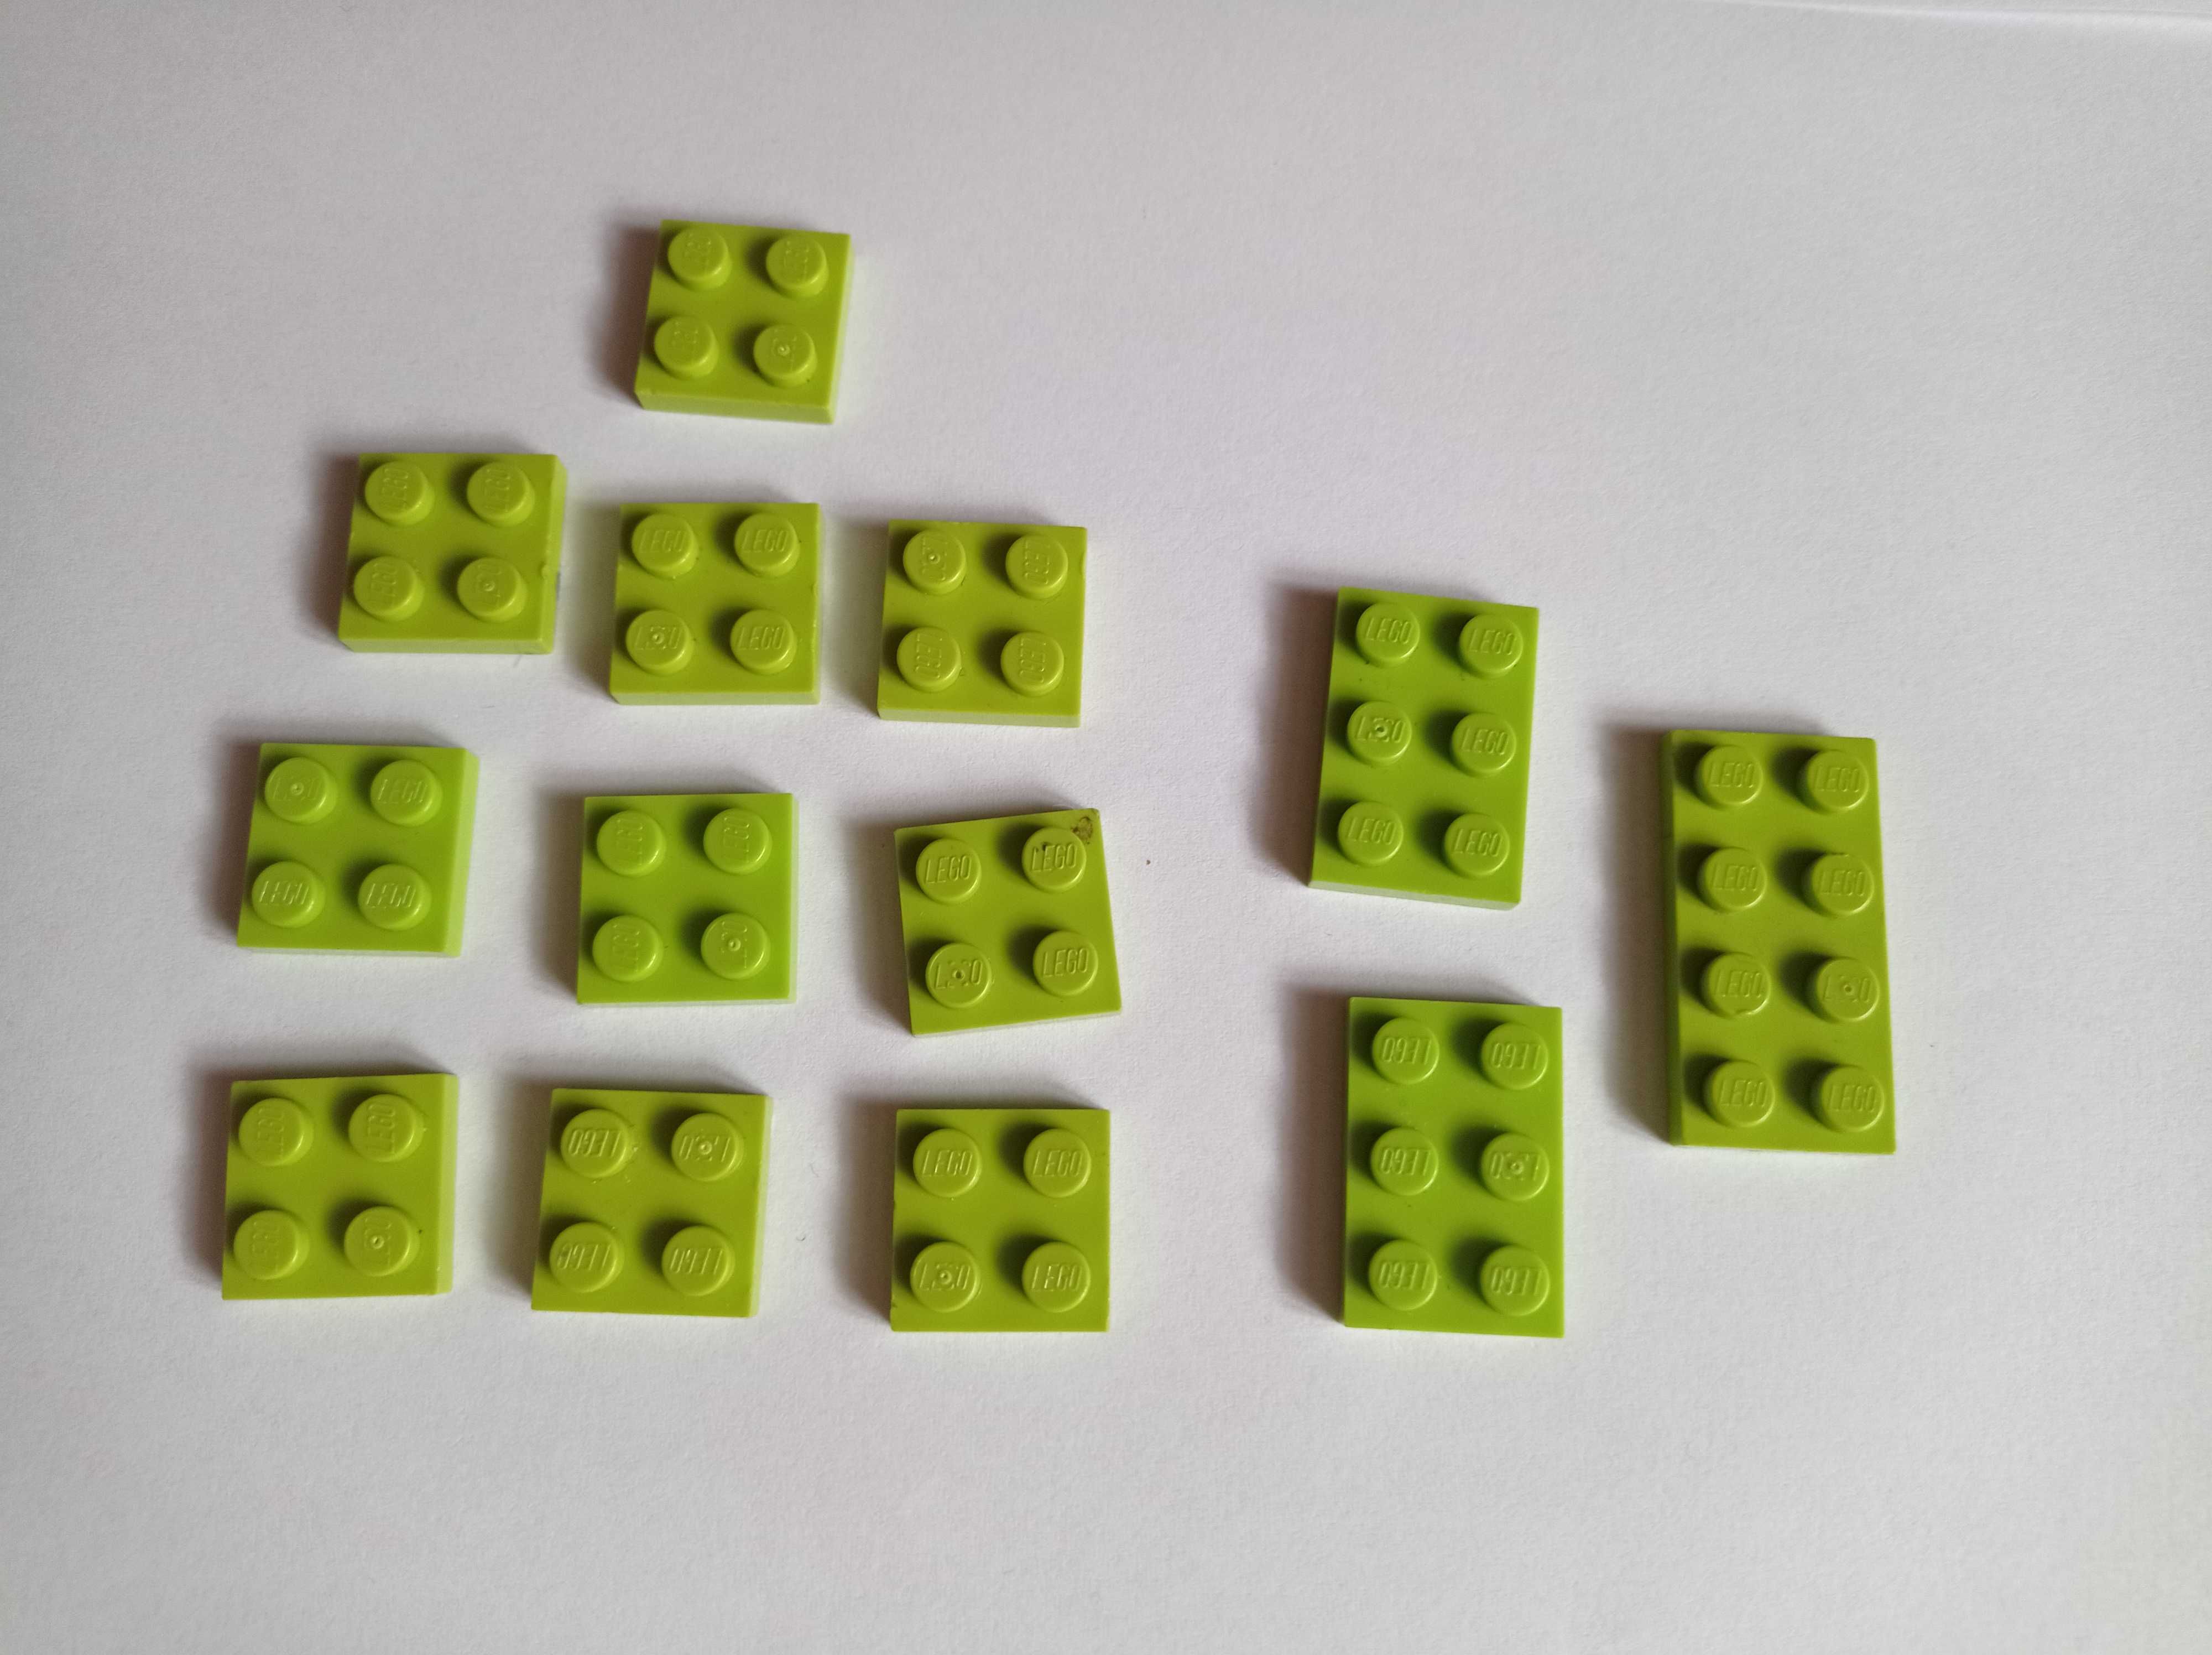 Klocki Lego, płytka, 2x2 (3022), 2x3 (3021), 2x4 (3020), zielony